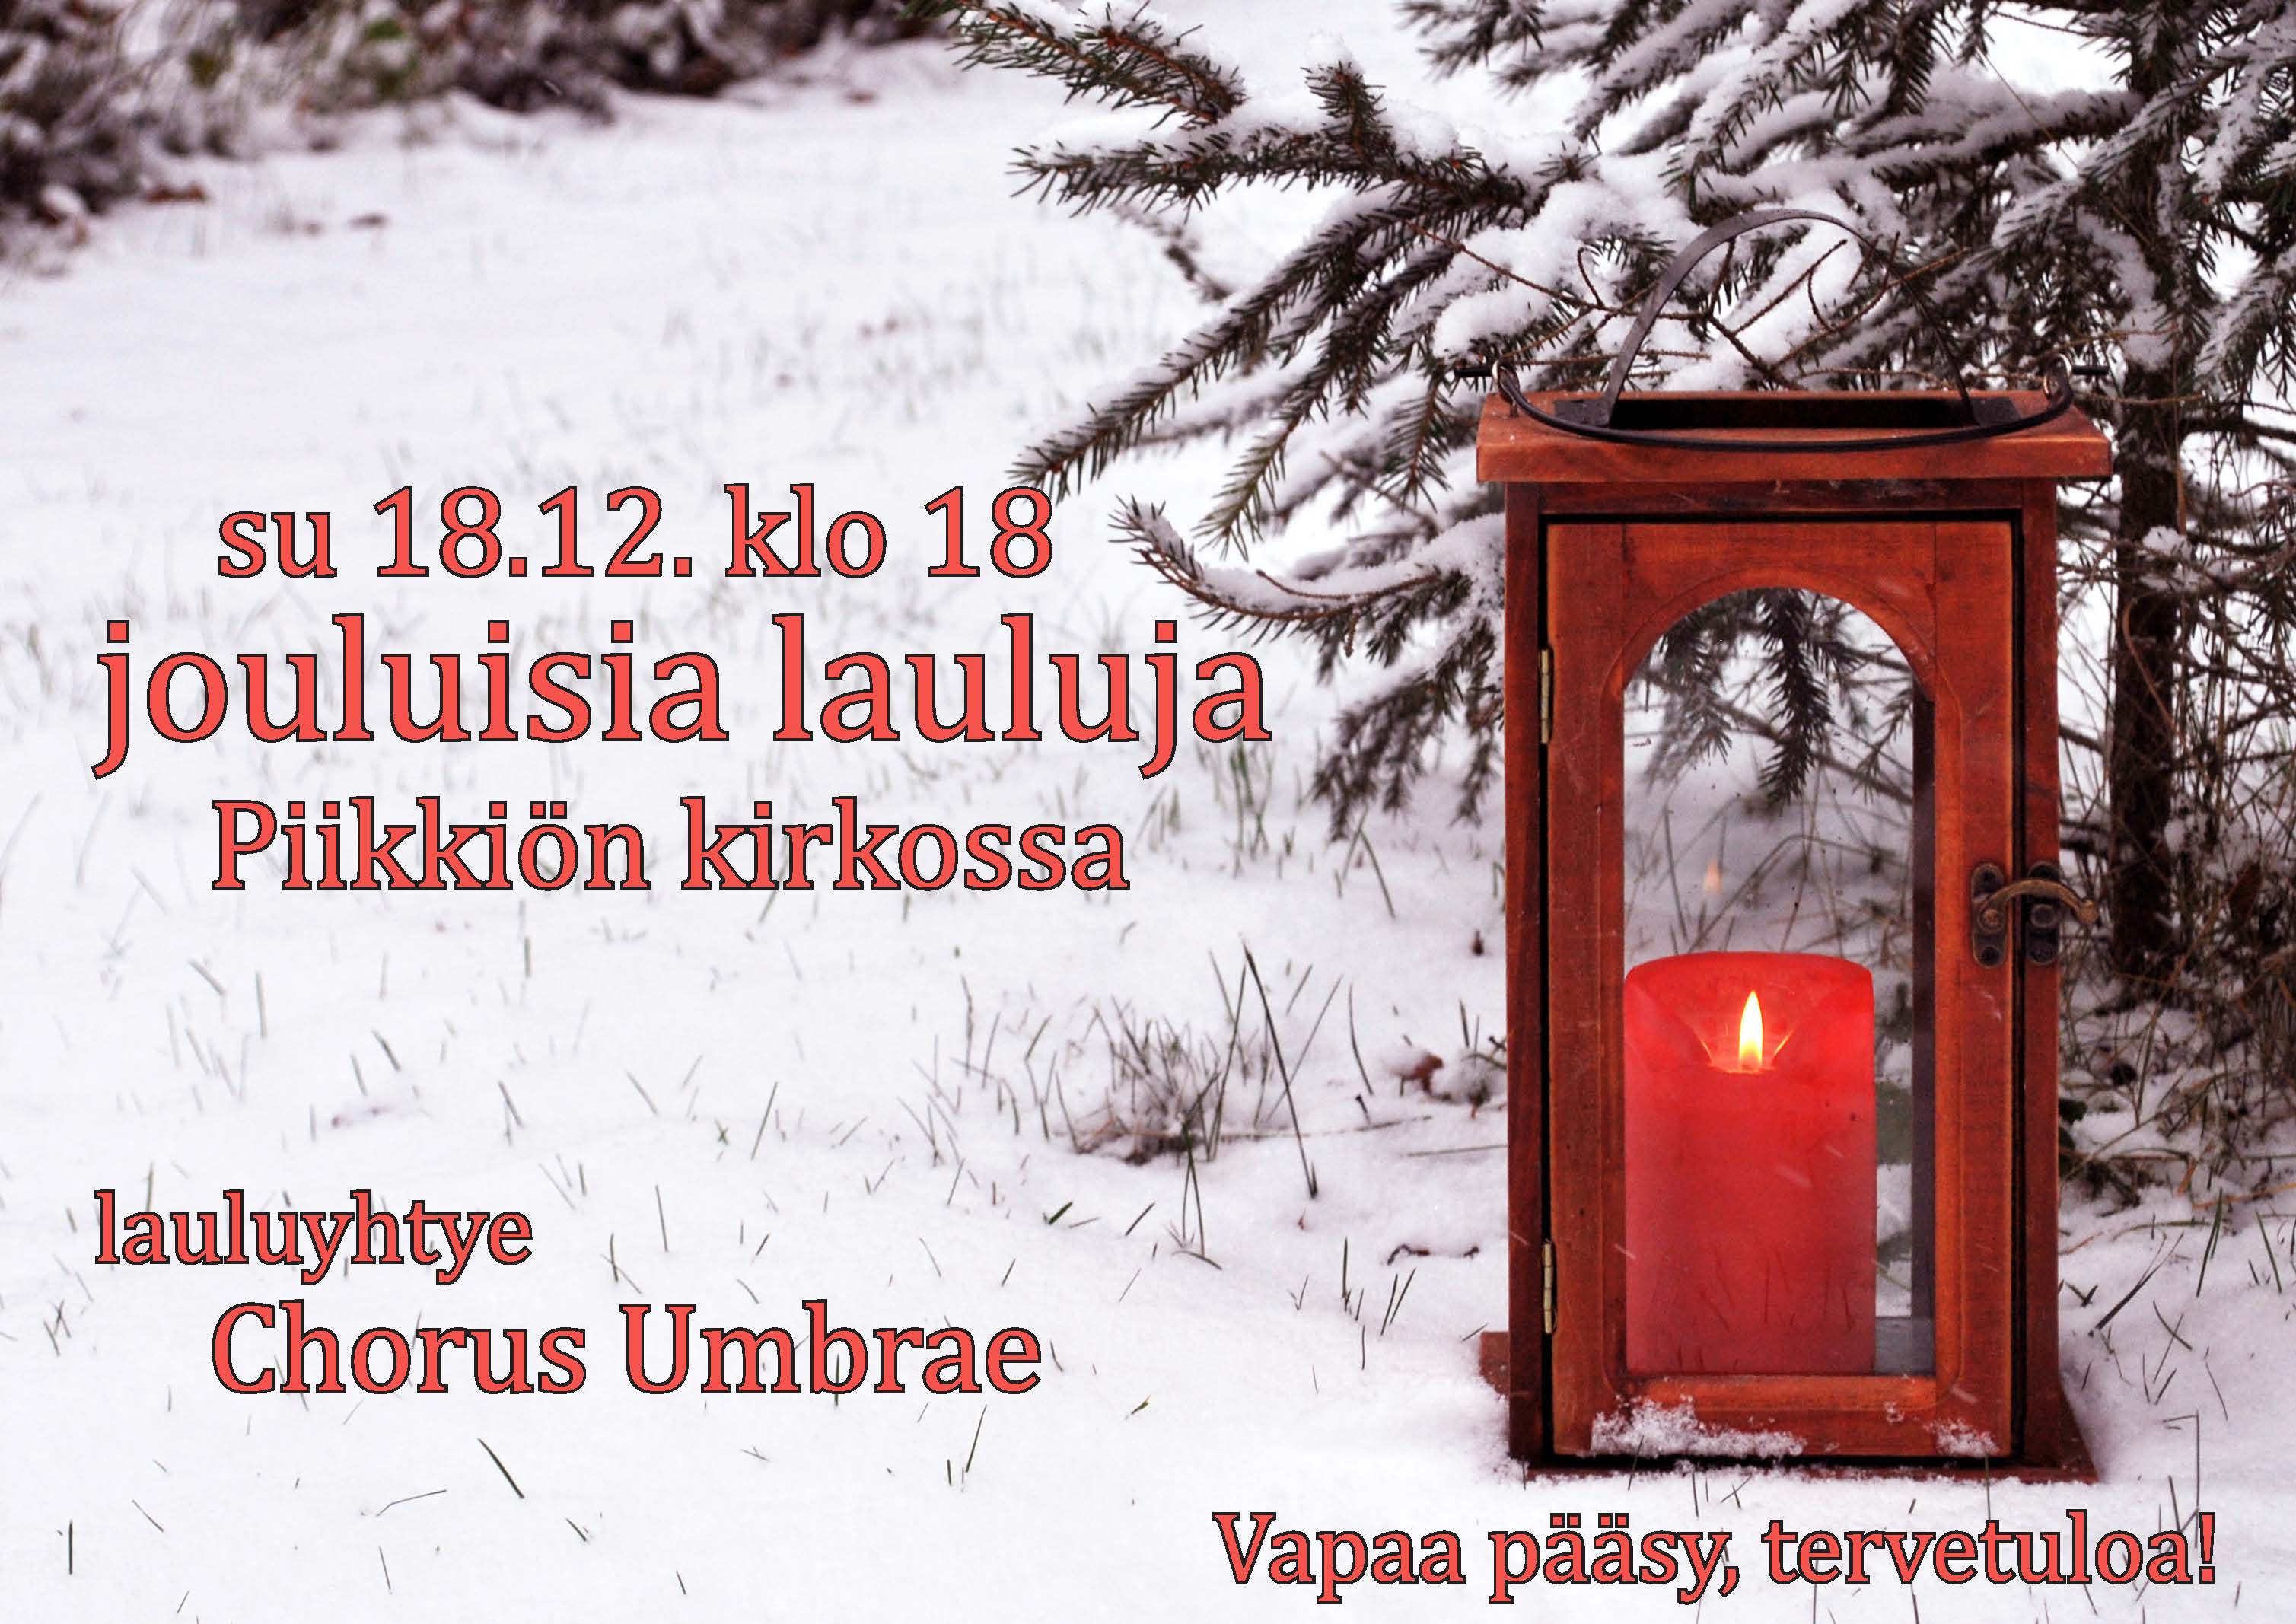 Lauluyhtye Chorus Umbreau esittää jouluisia lauluja 18.12. klo 18 Piikkiön kirkossa. Vapaa pääsy.